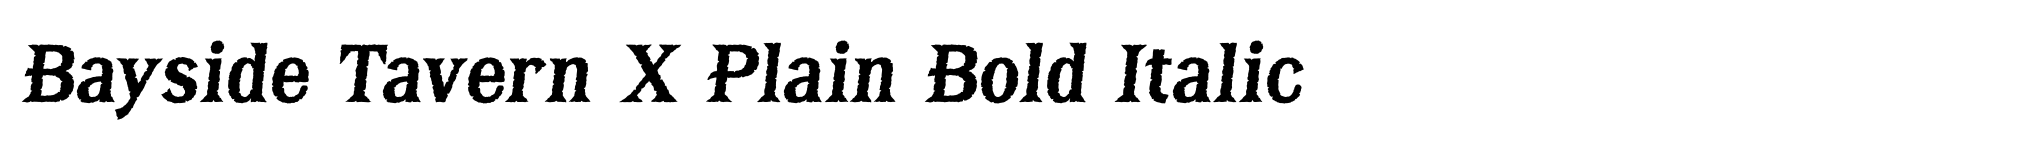 Bayside Tavern X Plain Bold Italic image